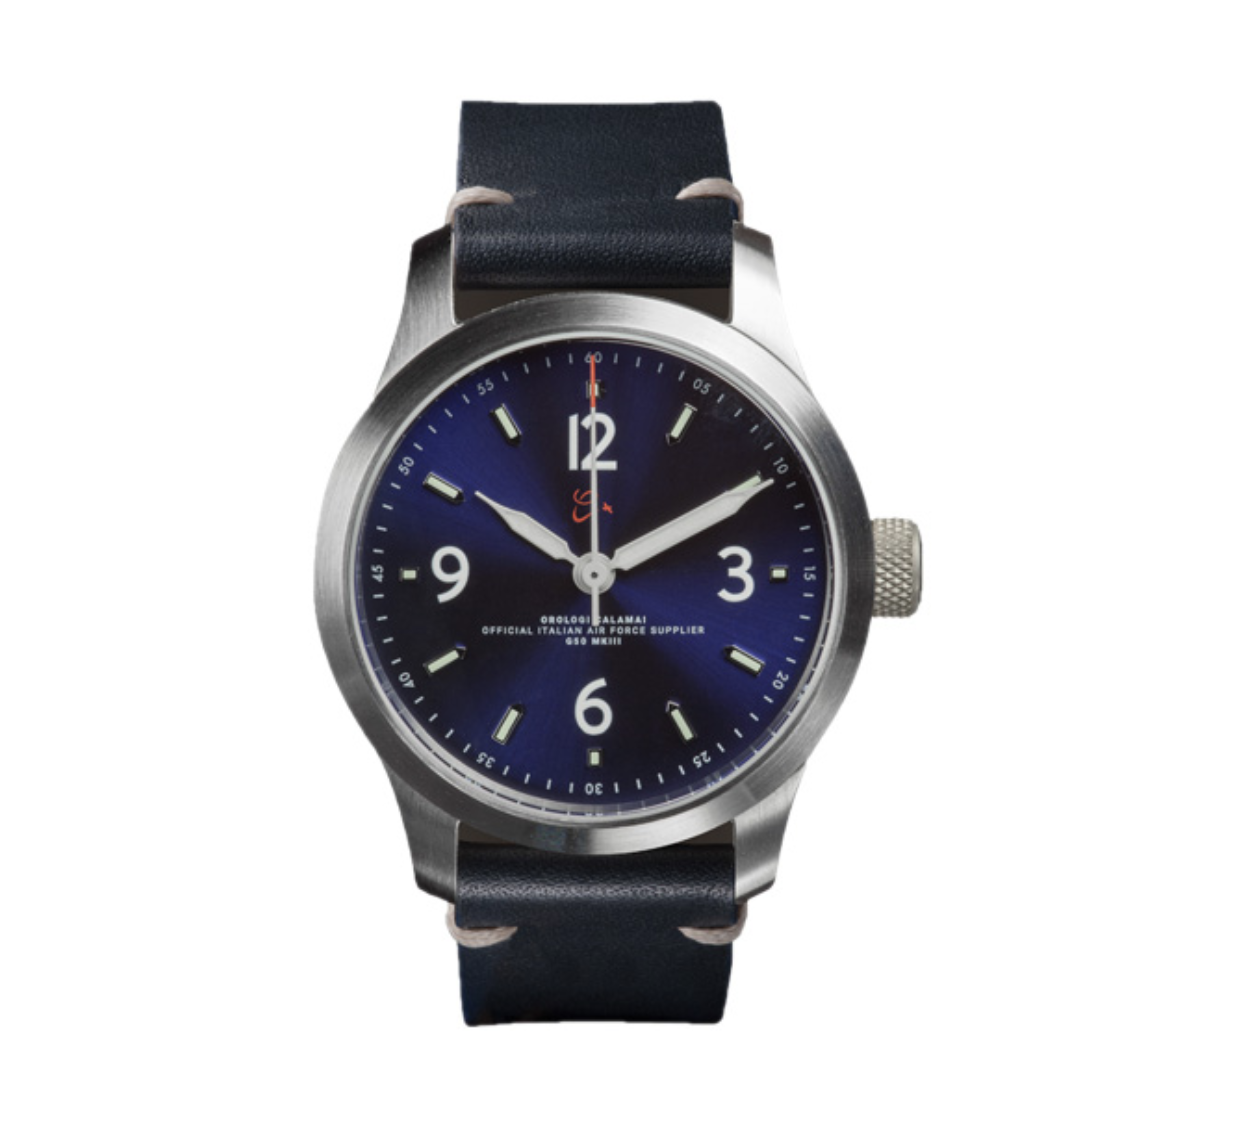 mk watch supplier